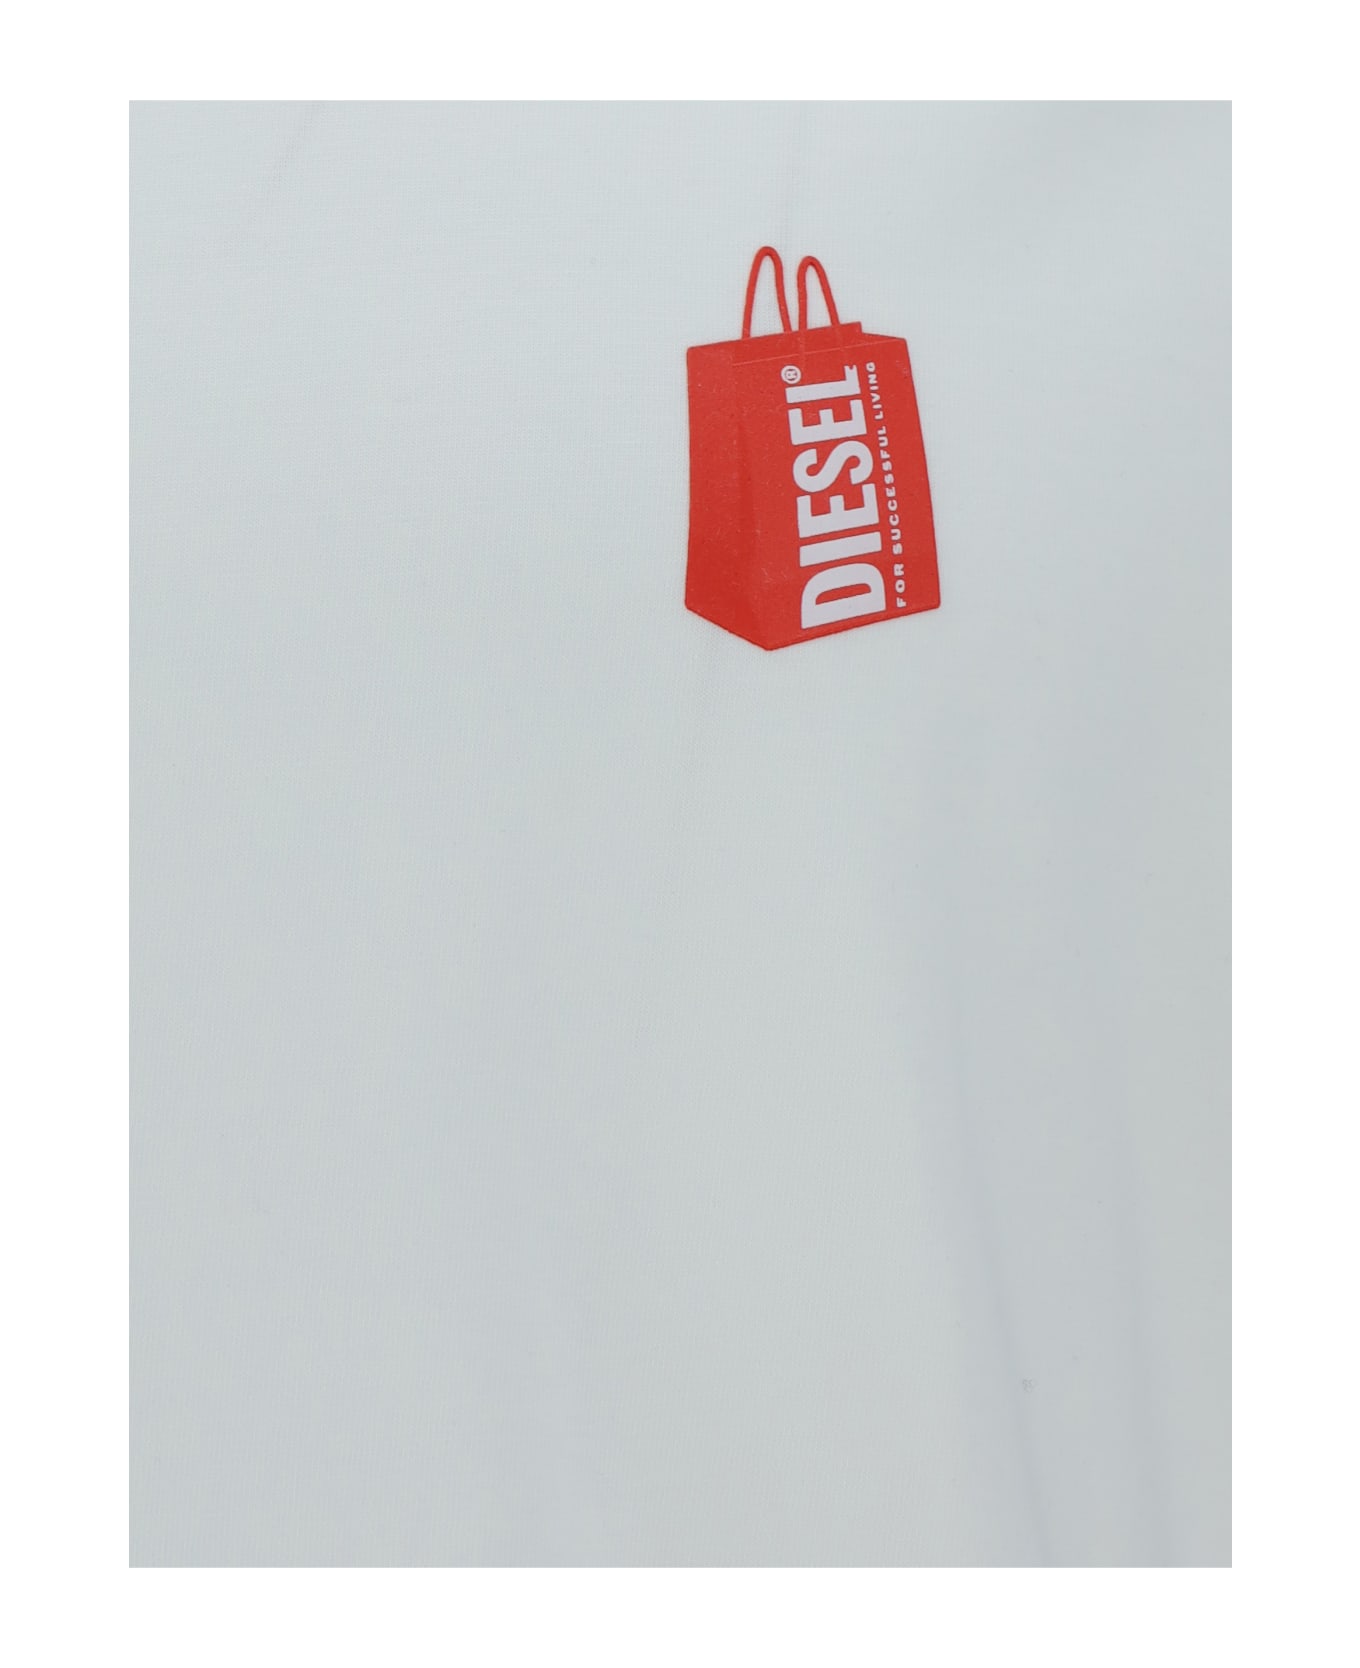 Diesel T-shirt - 104 - Off/white